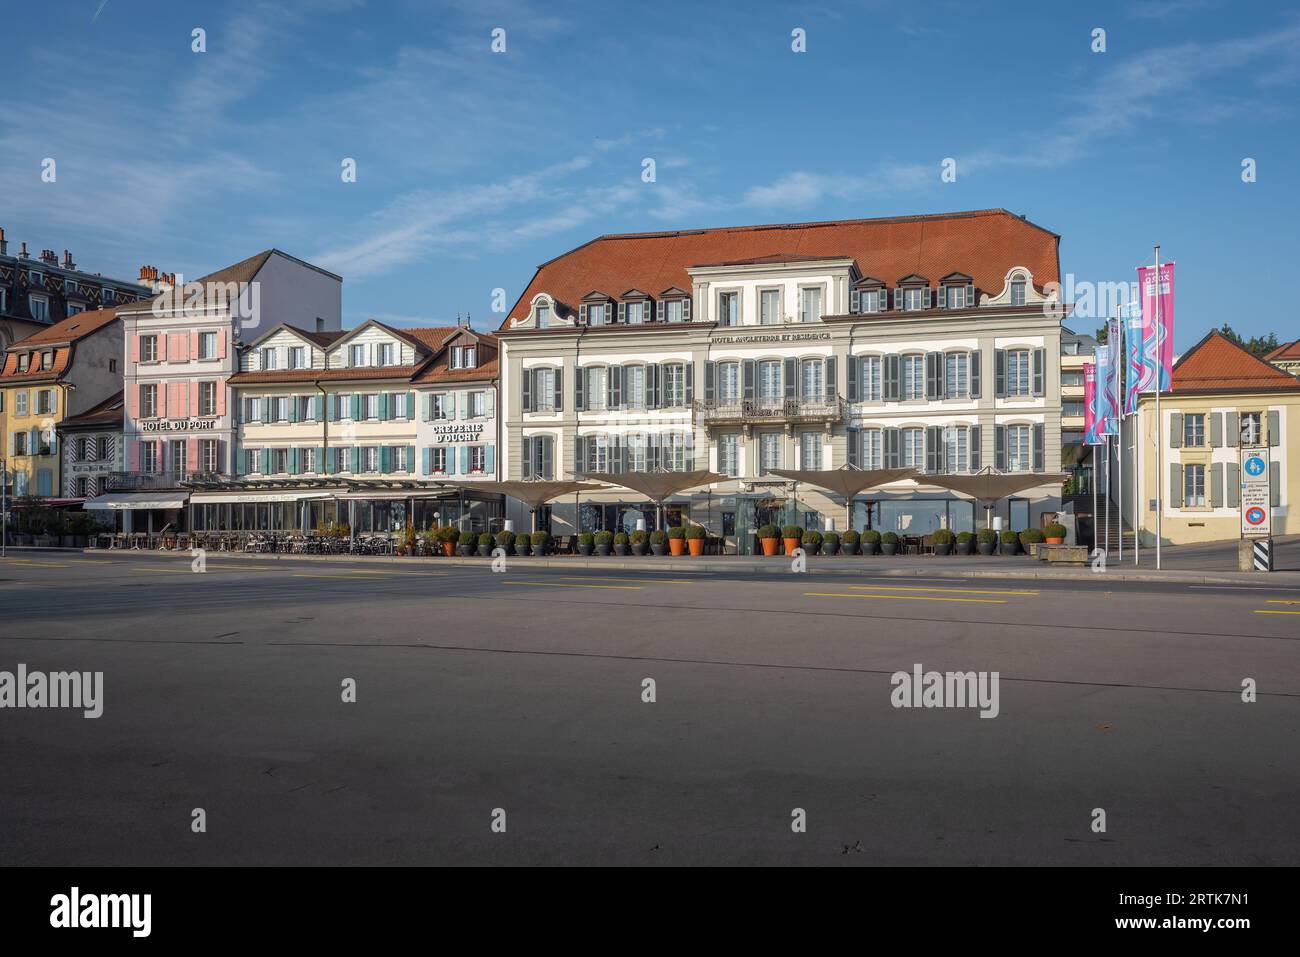 Hôtels à Ouchy Promenade - Lausanne, Suisse Banque D'Images